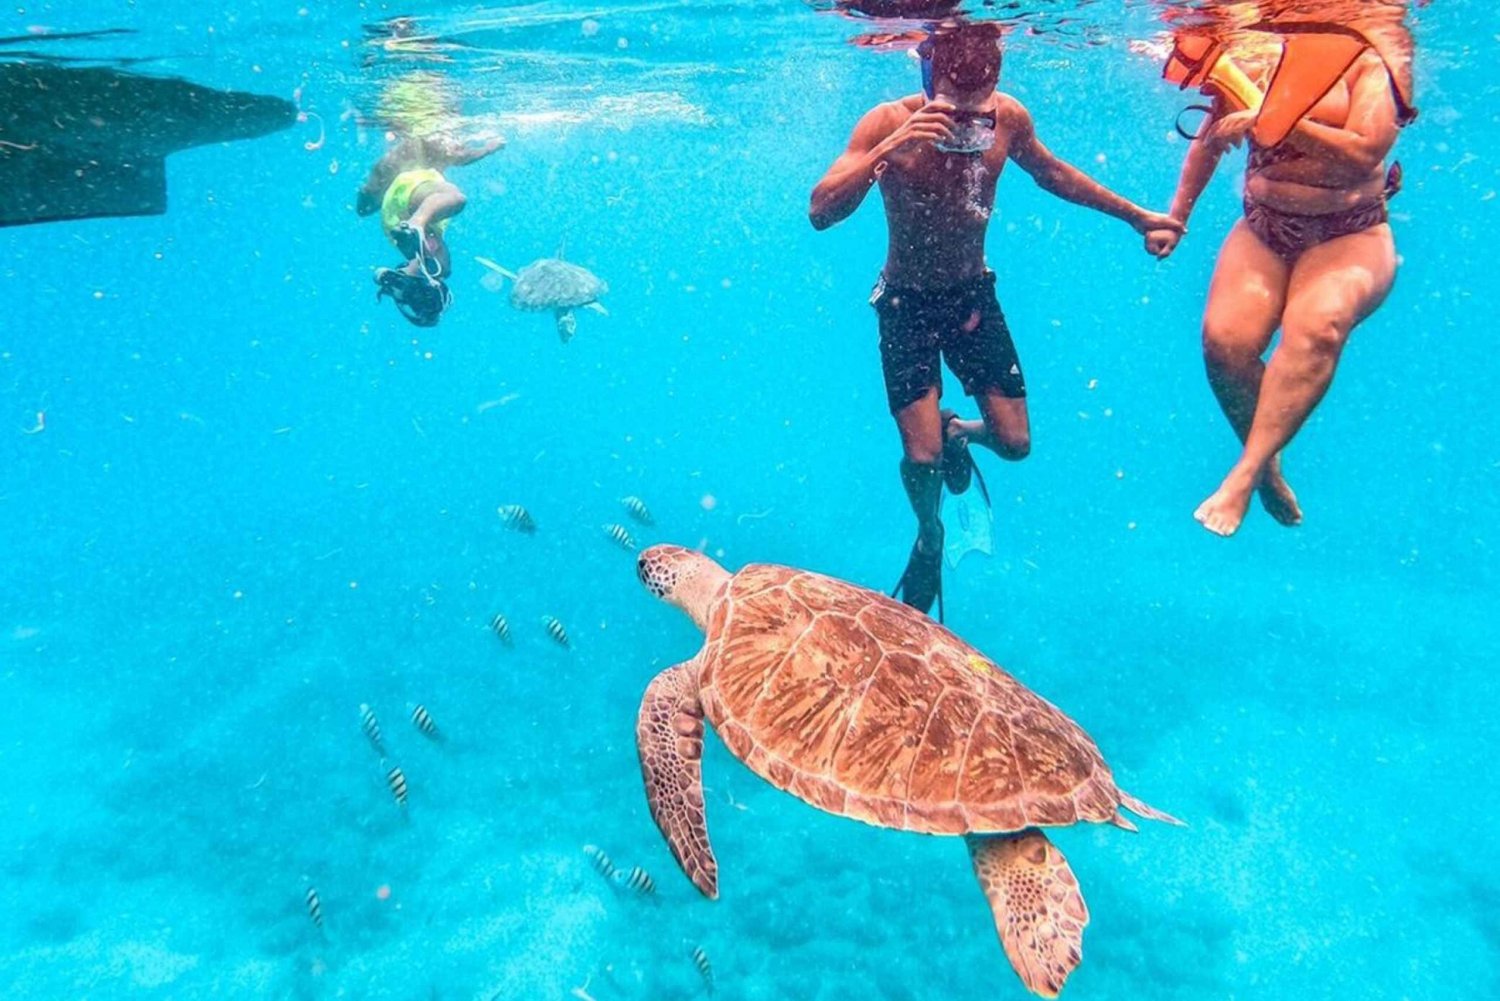 Privé snorkelervaring met zeeschildpadden voor cruisers